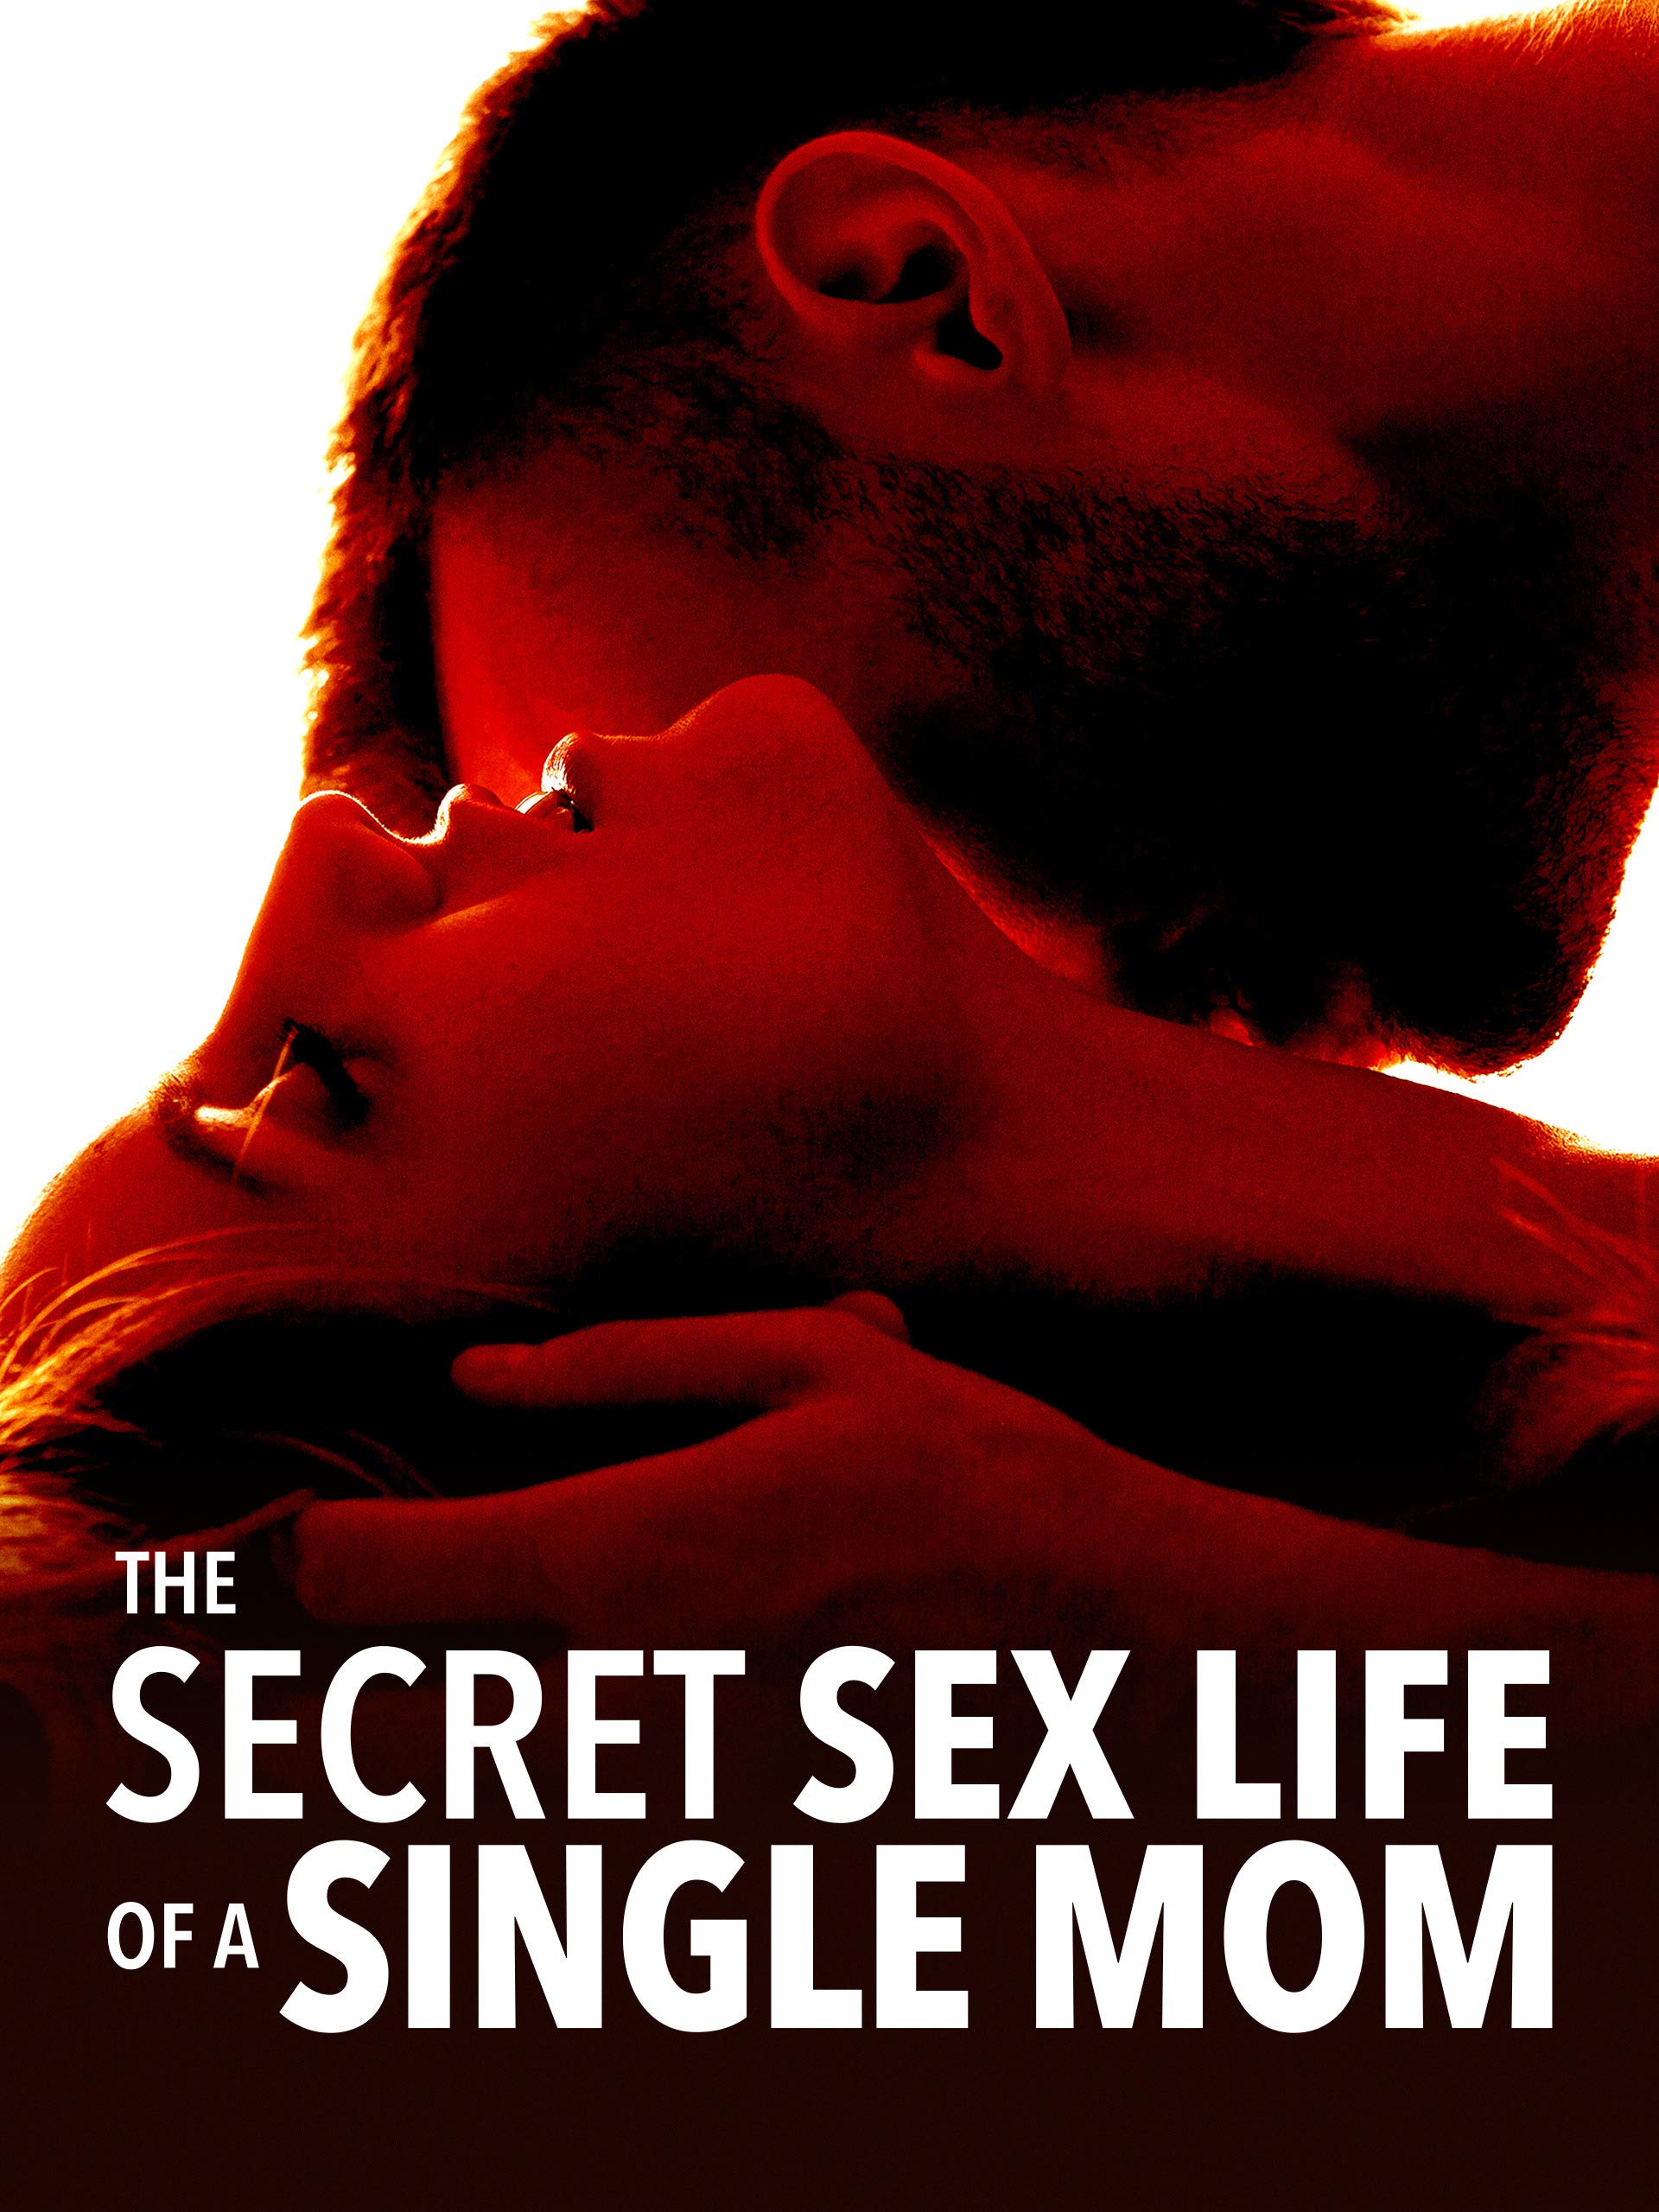 amanda munger recommends mom sex film pic